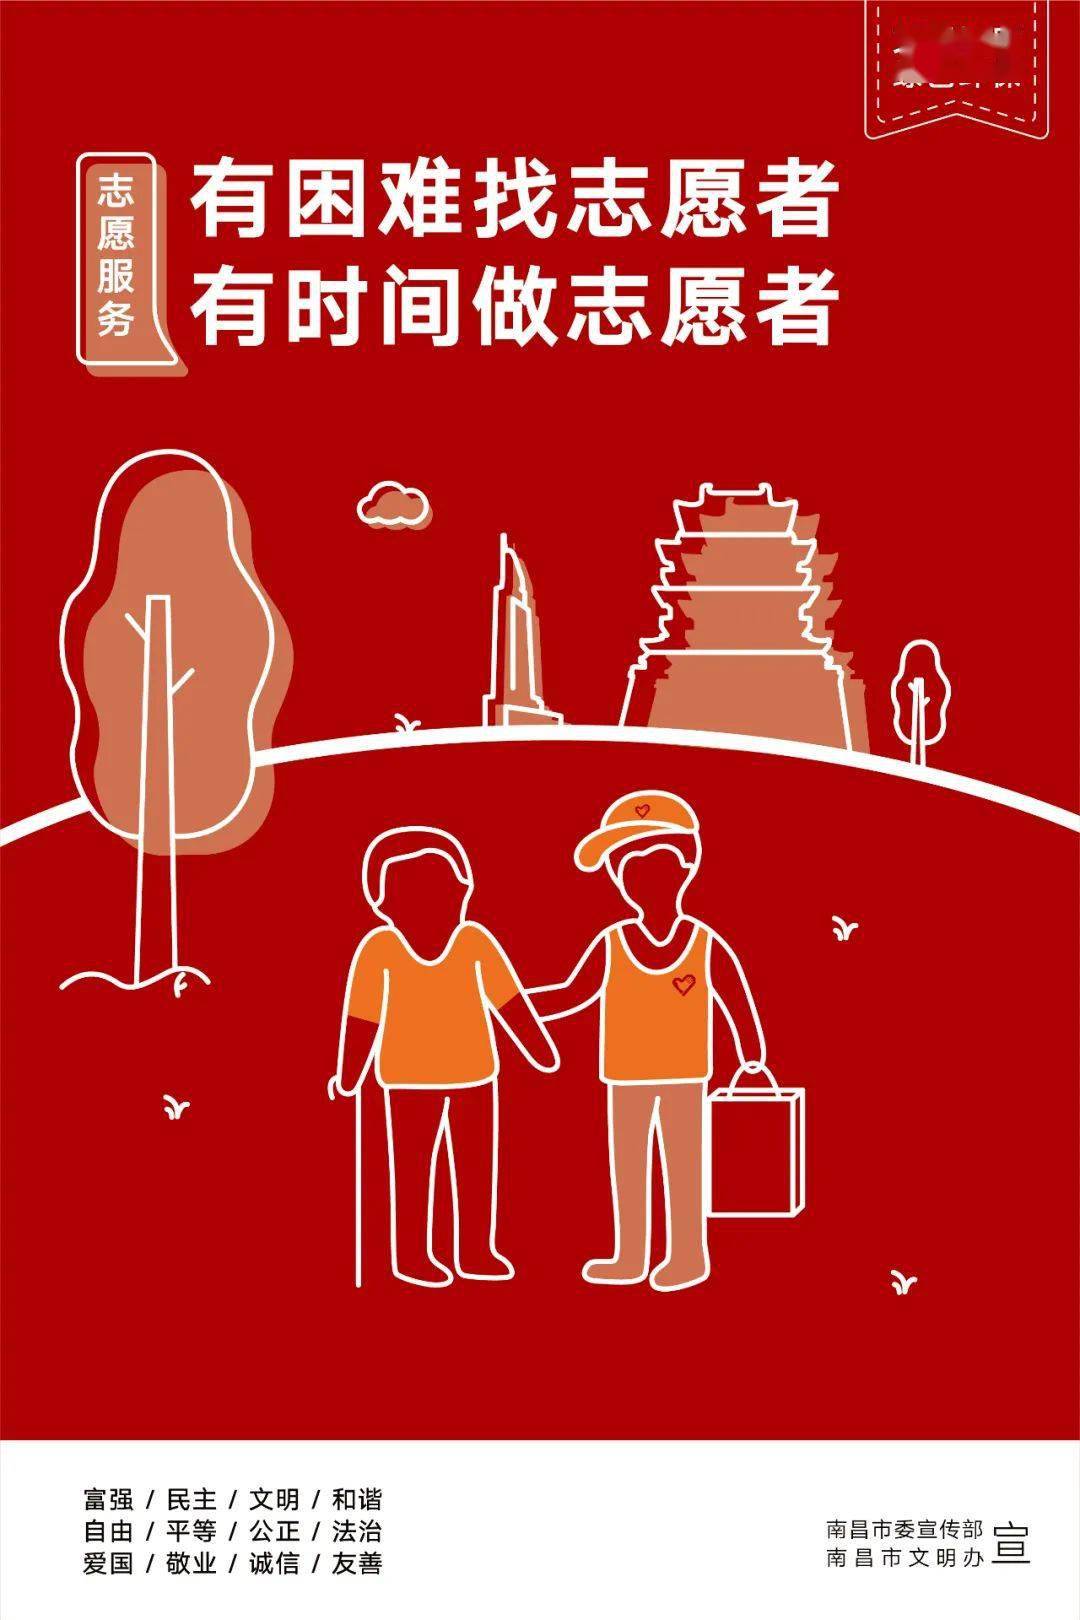 志愿服务活动 "中国好人"道德模范事迹进校园 【公益海报】邻里互助